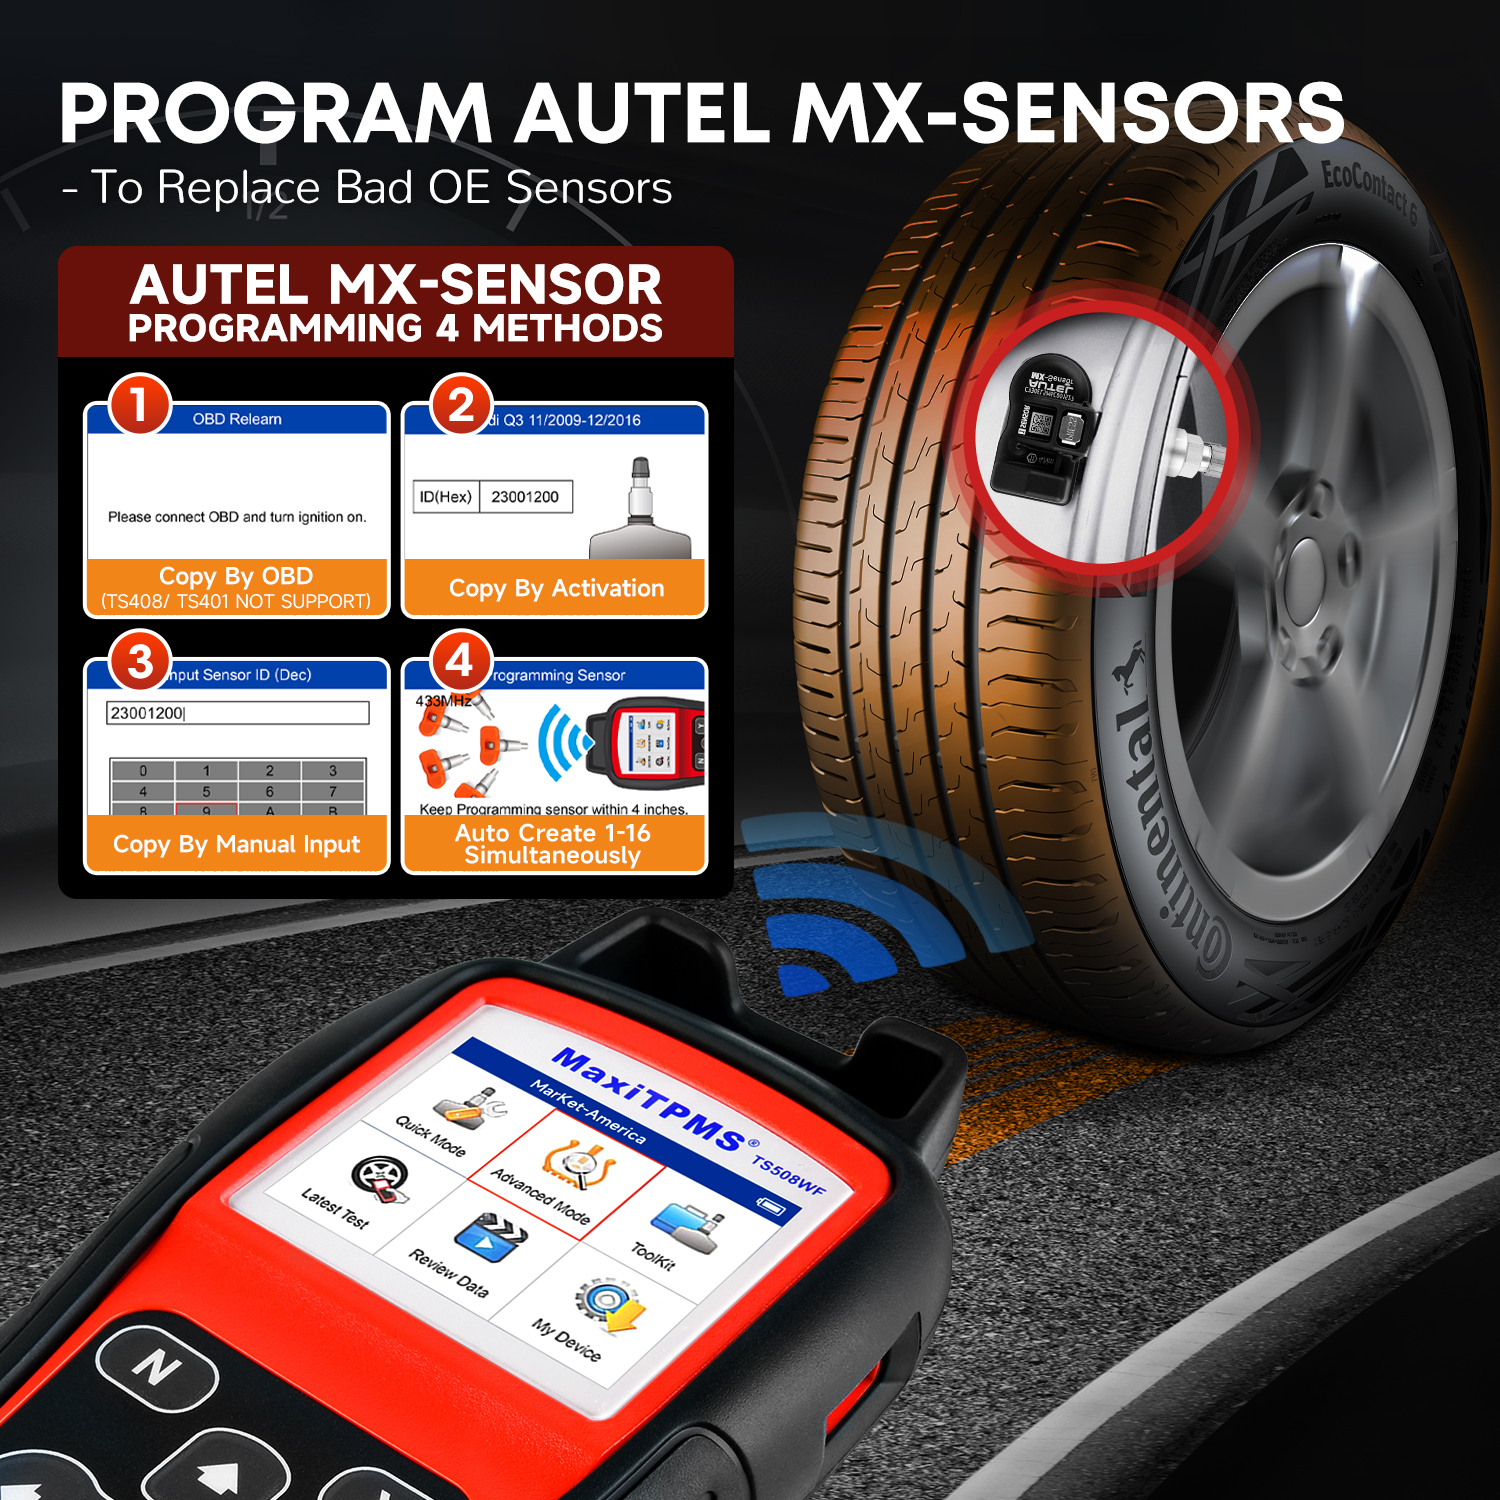 Autel MaxiTPMS TS508WF TPMS Code Reader 315 433MHz MX-Sensor Programmer TPMS Diagnostic Service Tool WIFI Update PK TS508 TS501